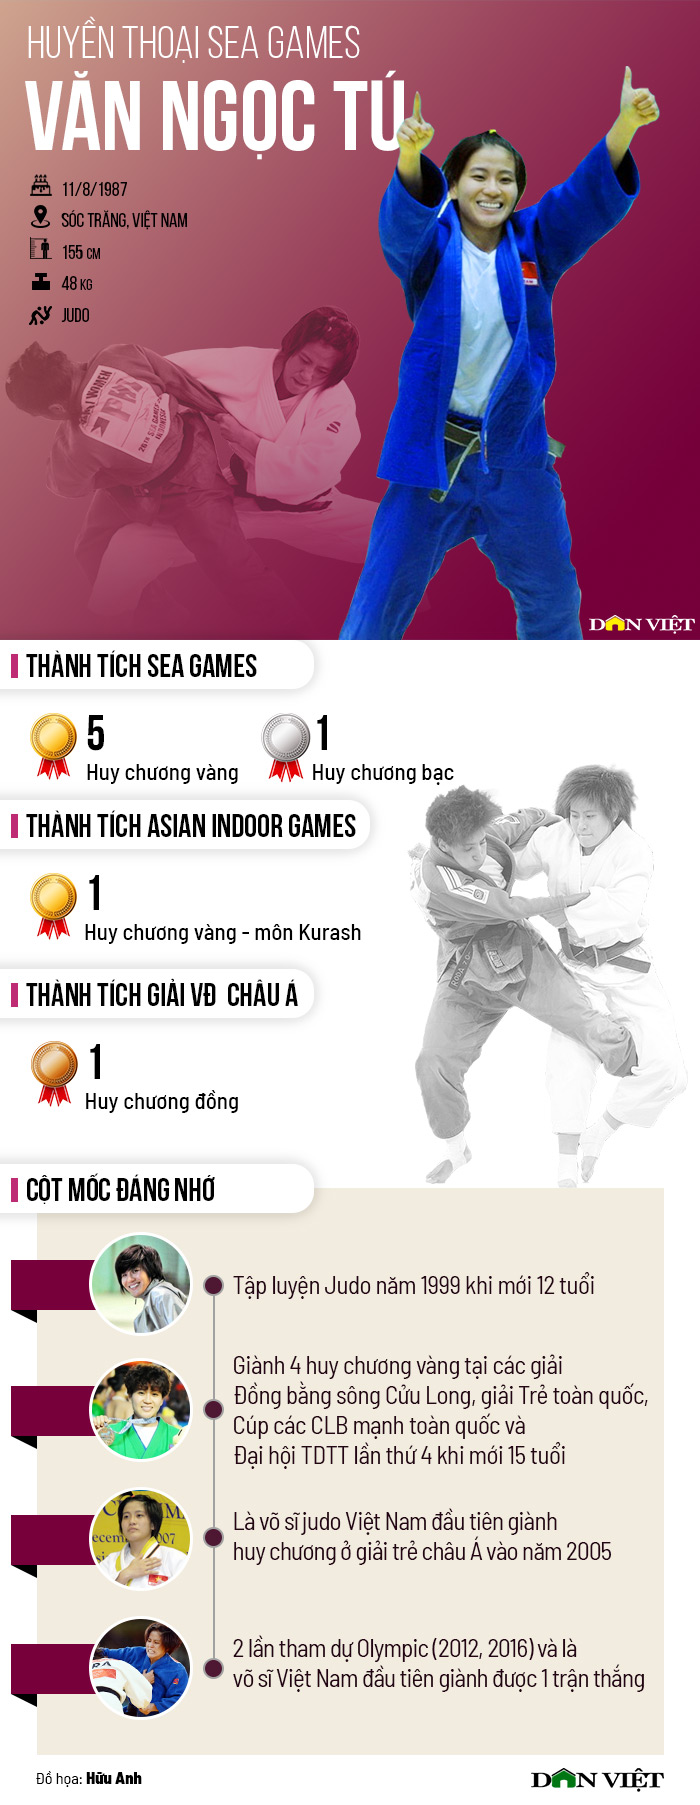 Huyền thoại SEA Games: Văn Ngọc Tú - Nữ hoàng judo - Ảnh 2.